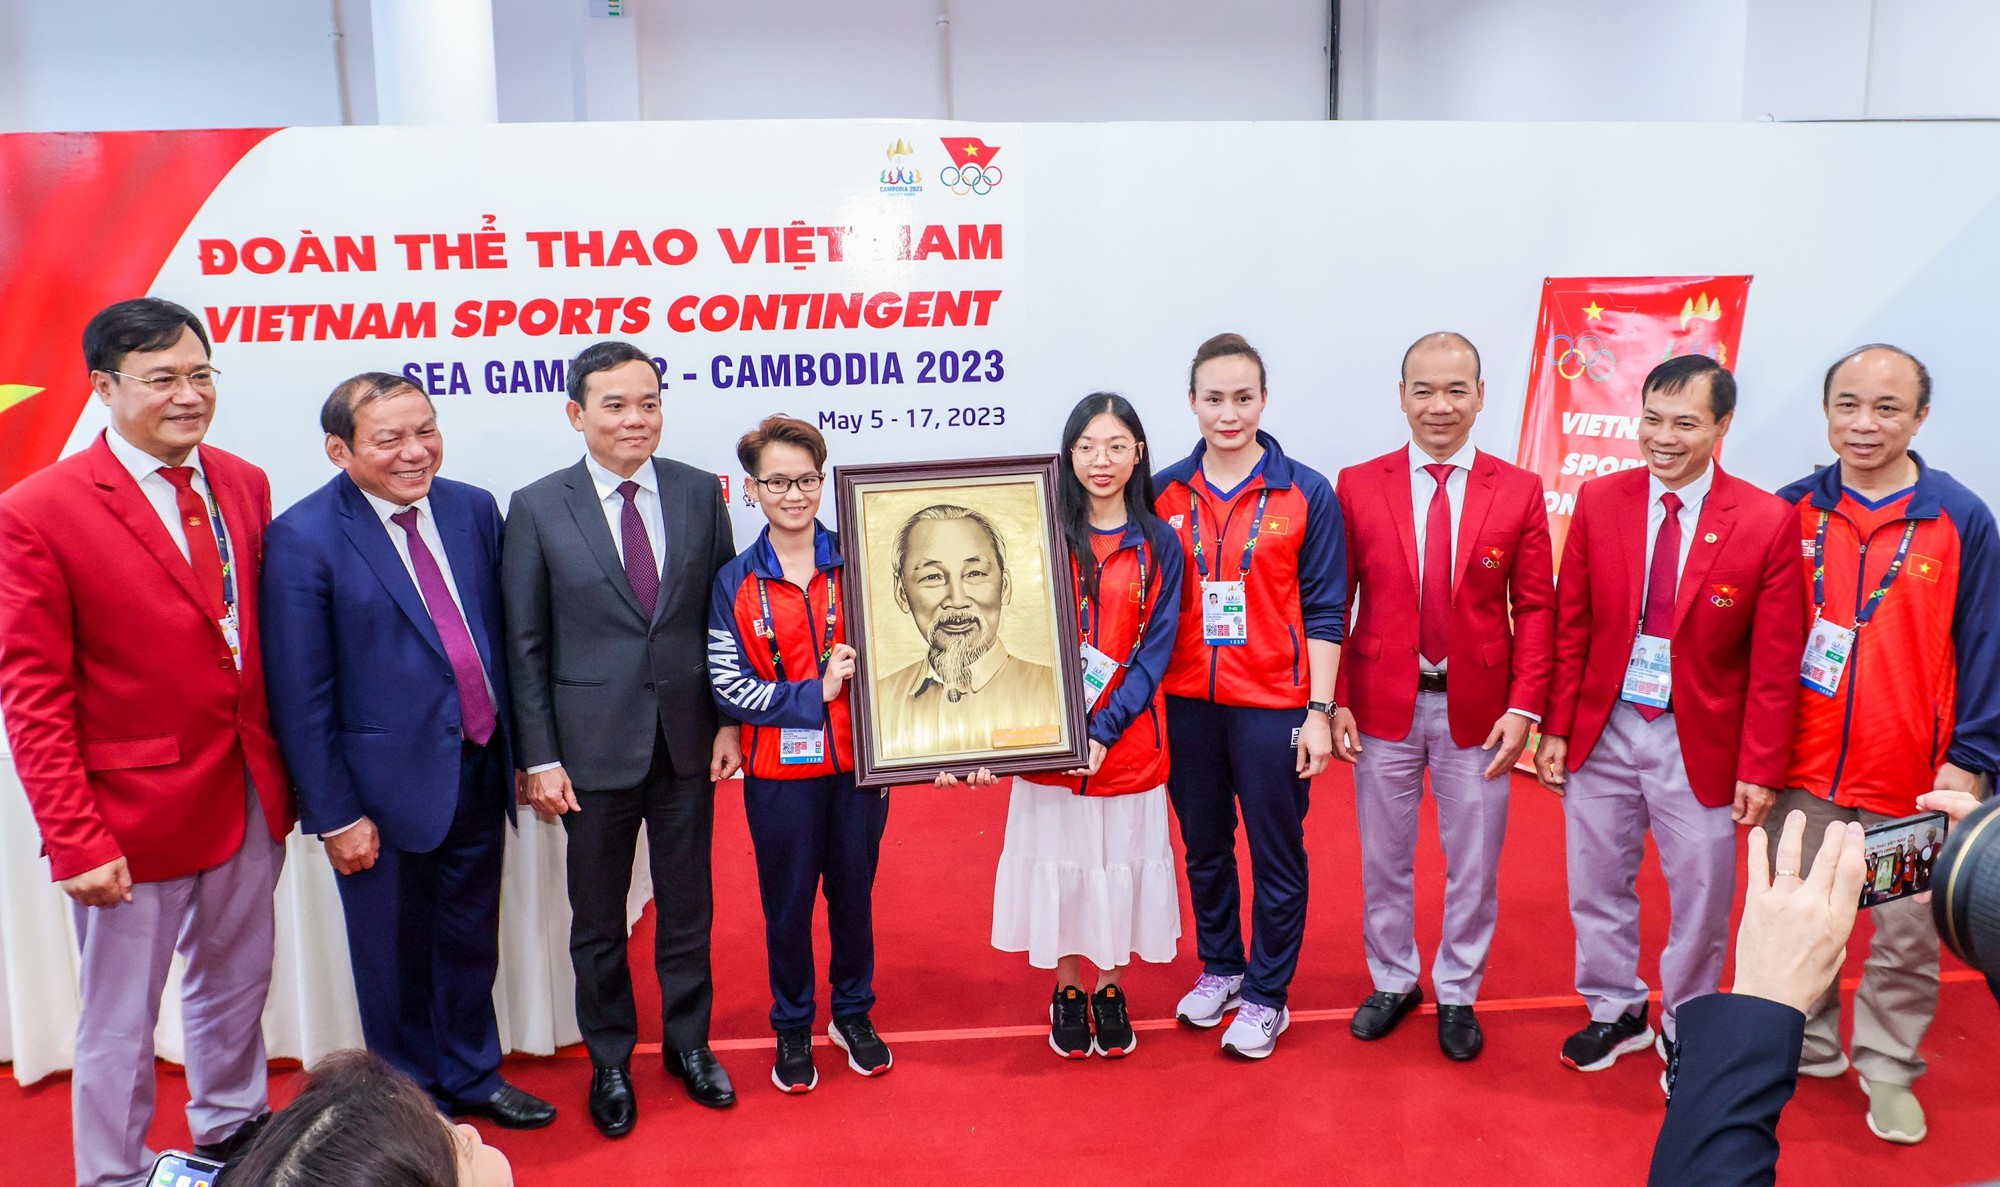 Phó thủ tướng Trần Lưu Quang: 'Chúng ta có thể được khóc trong niềm tự hào dân tộc' - Ảnh 1.